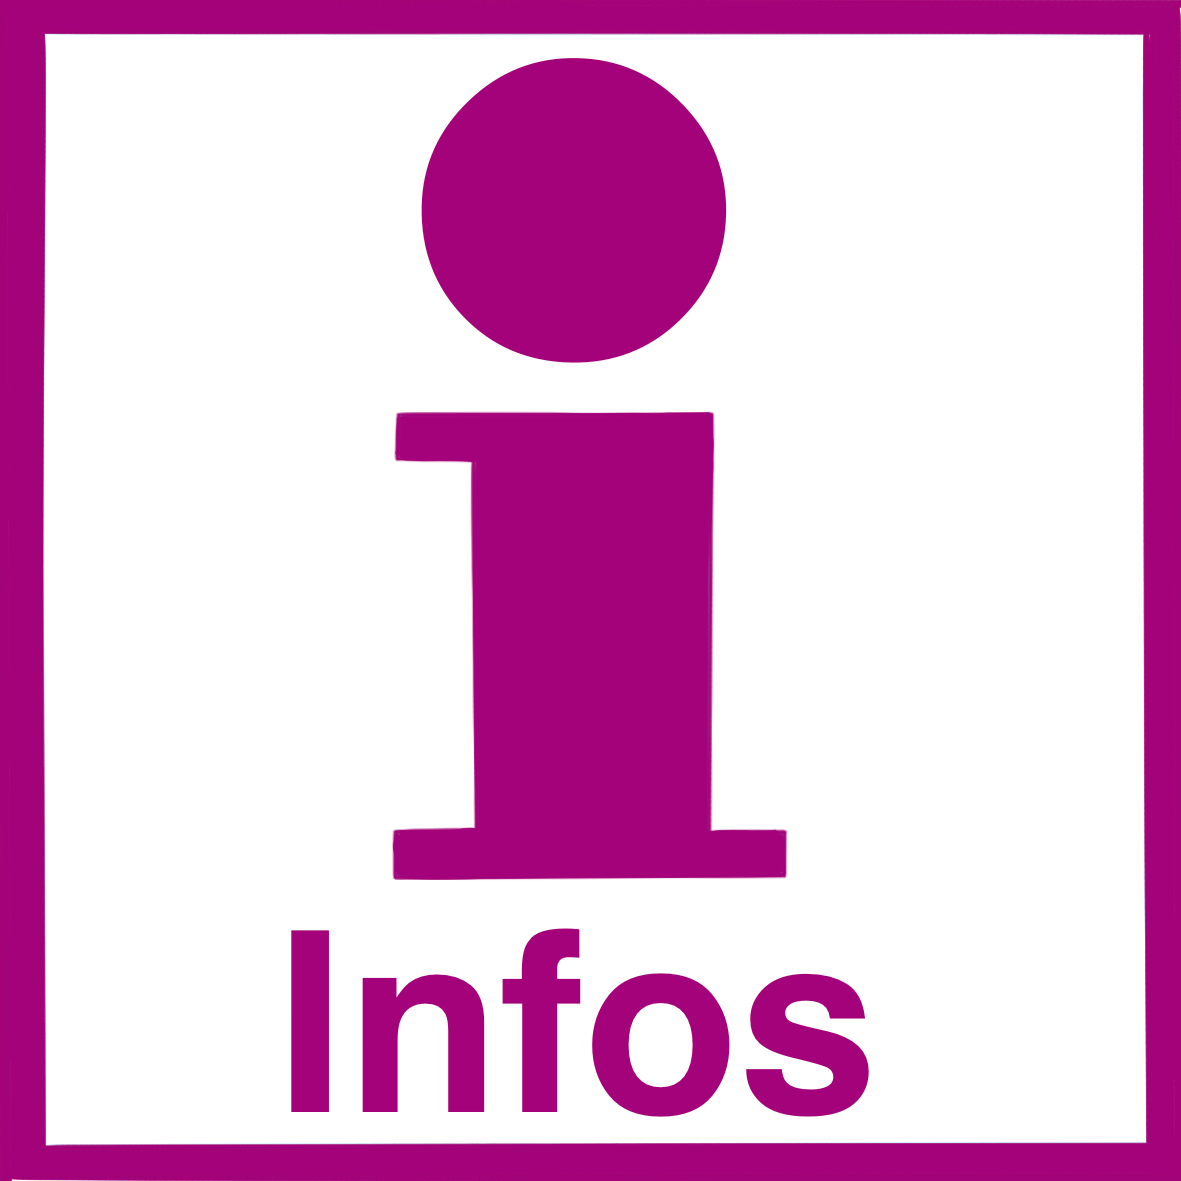 Ein pinkfarbenes I mit I-Punkt in einem Quadrat. Unter dem I steht: Infos.